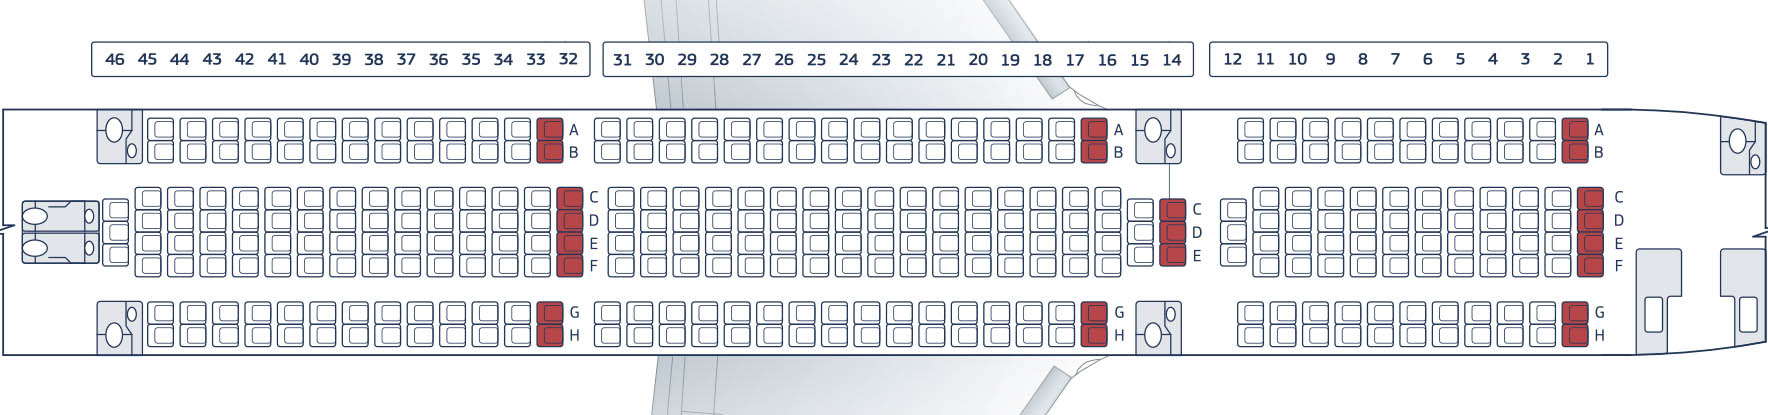 ✈ самолет боинг 767-200er: нумерация мест в салоне, схема посадочных мест, лучшие места